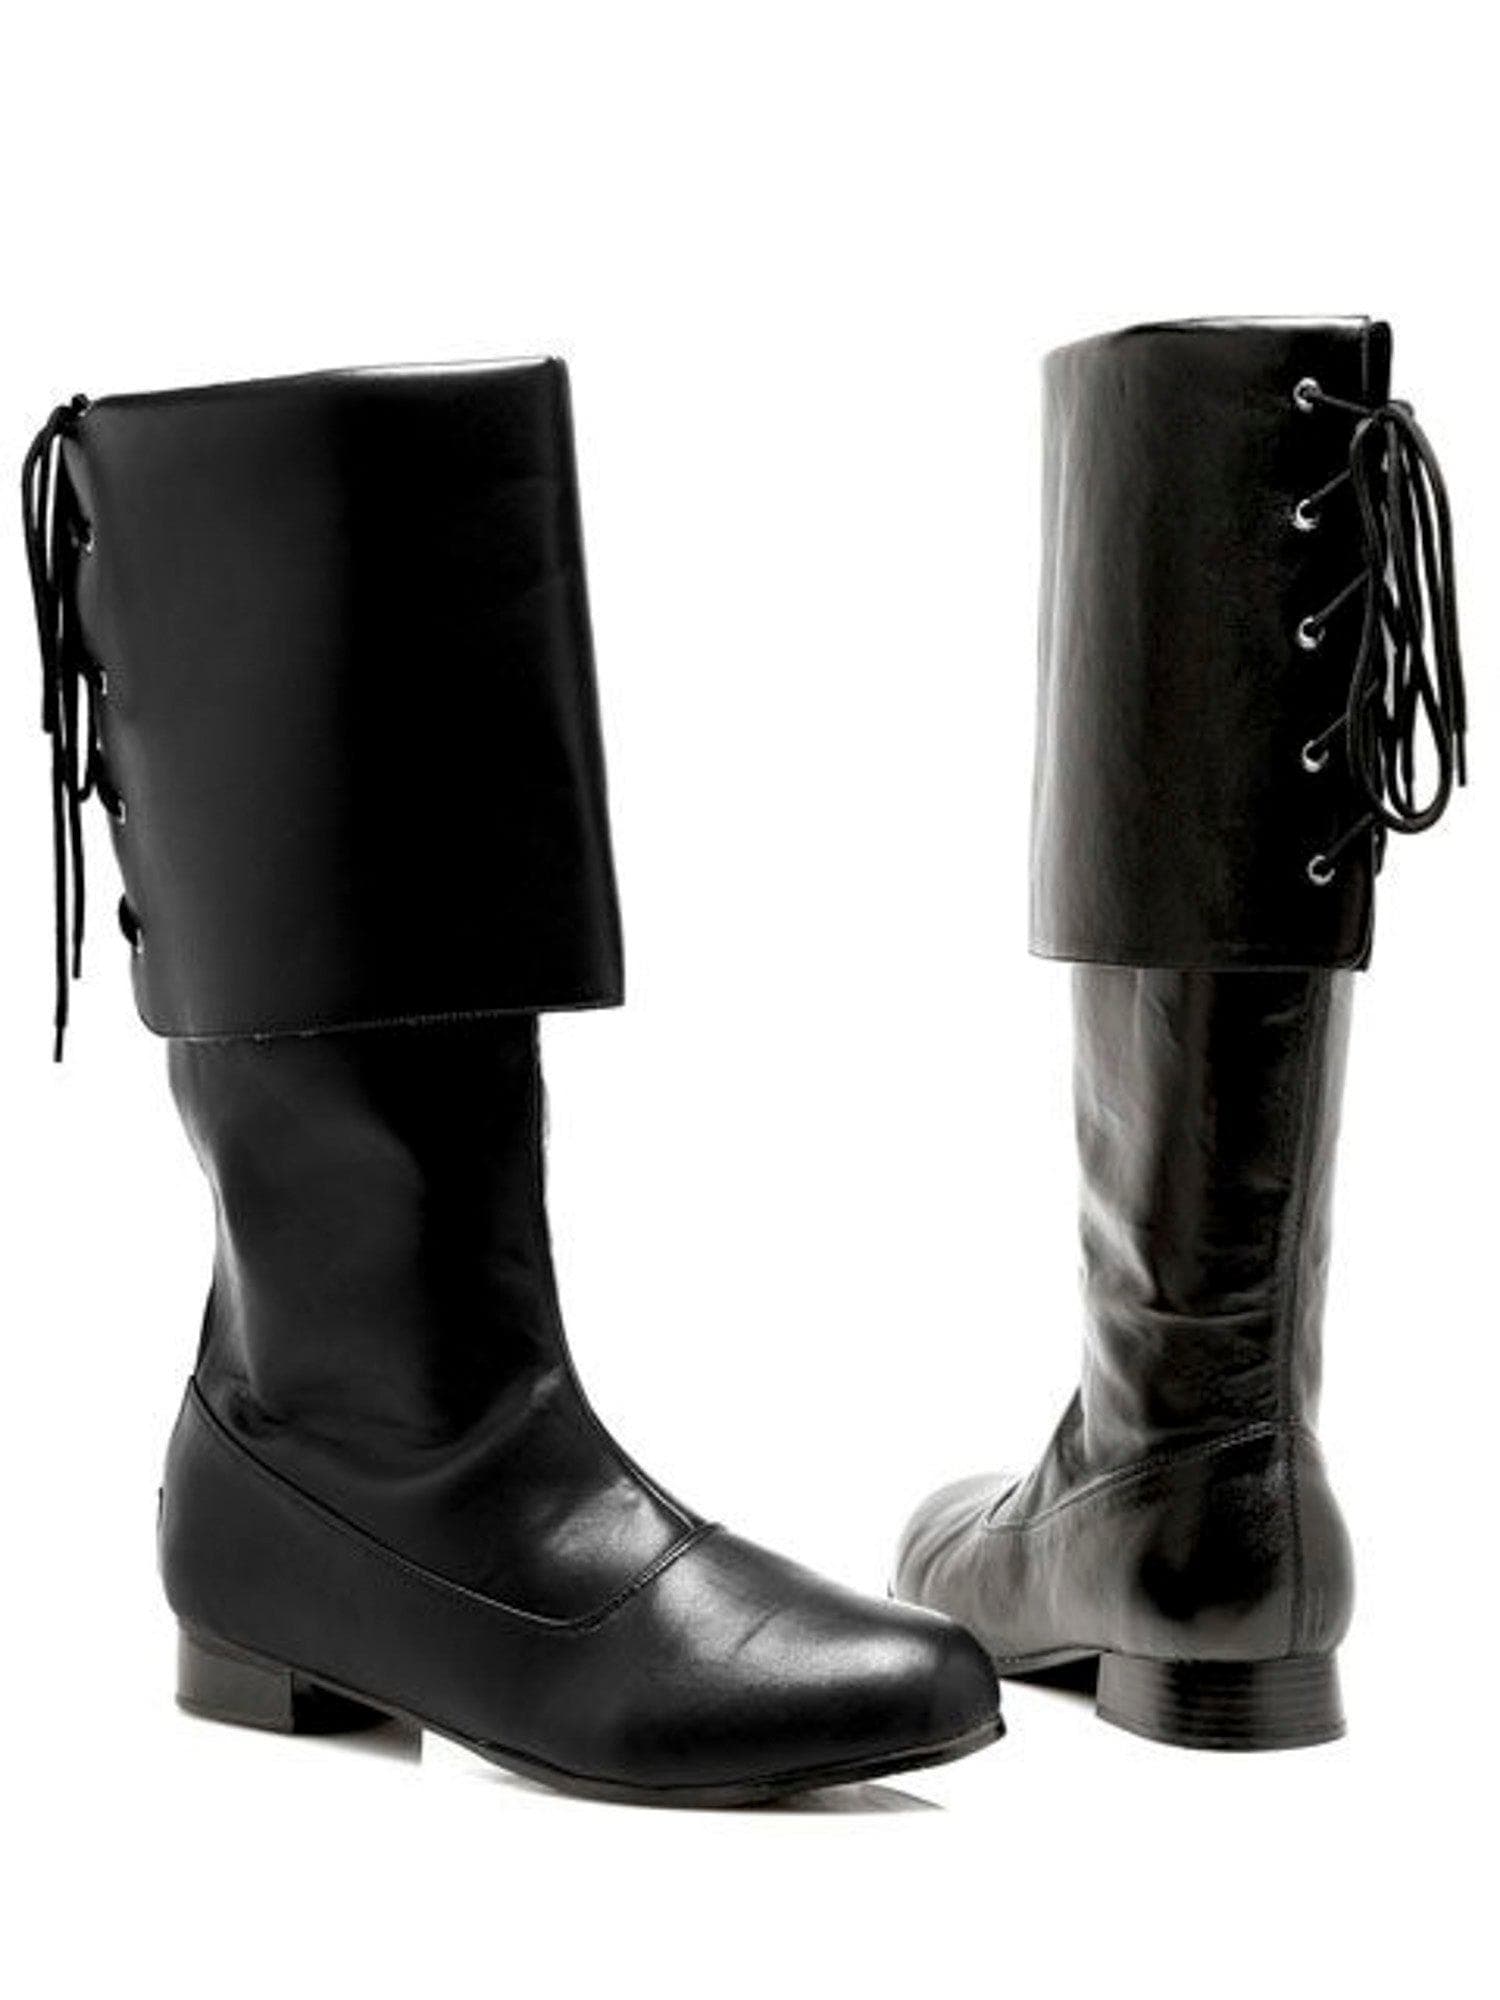 Adult Black Buccaneer Boots - costumes.com